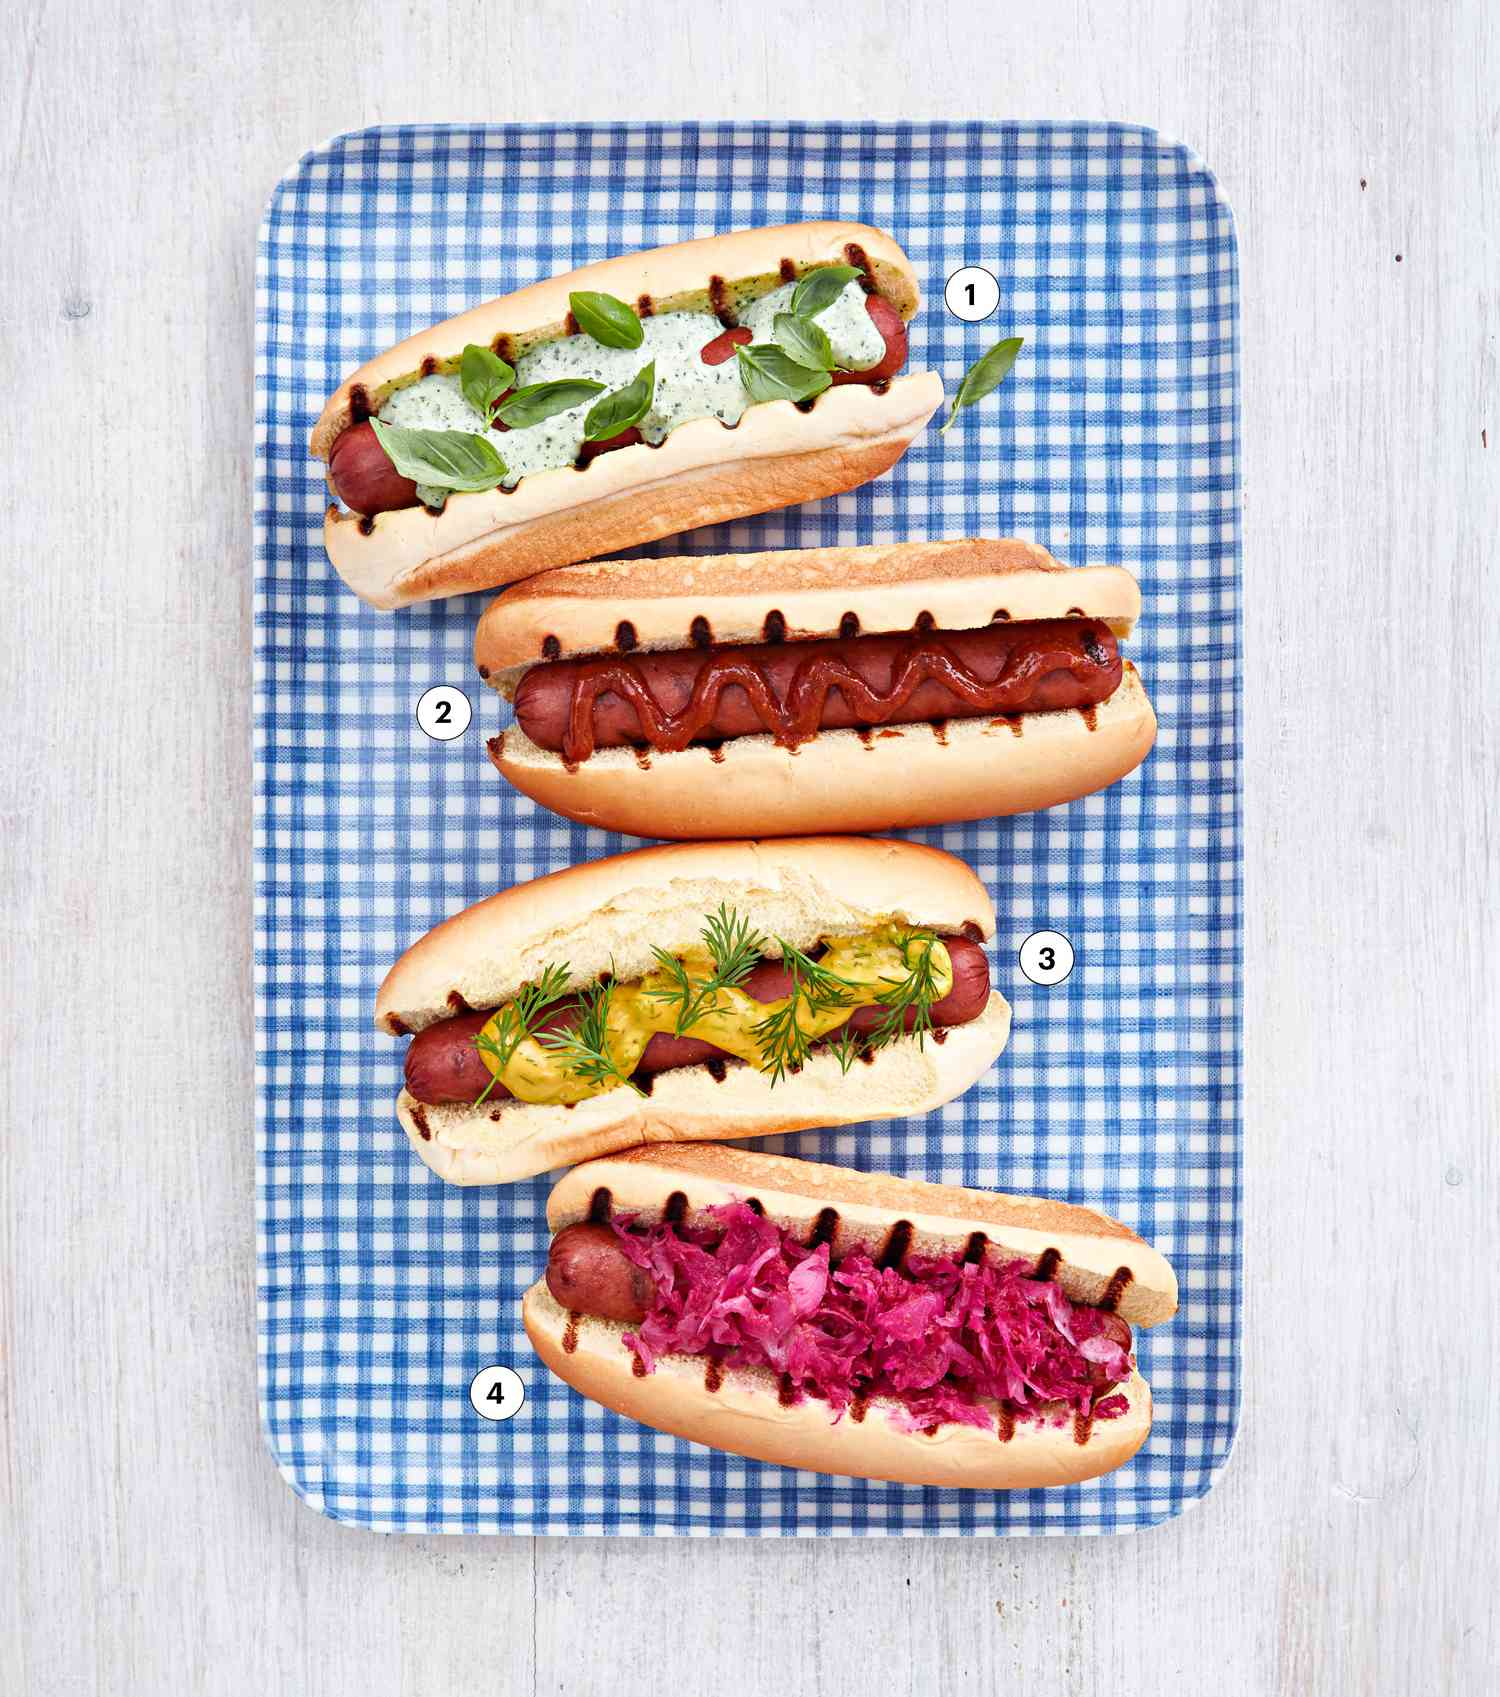 hot dog varieties on platter